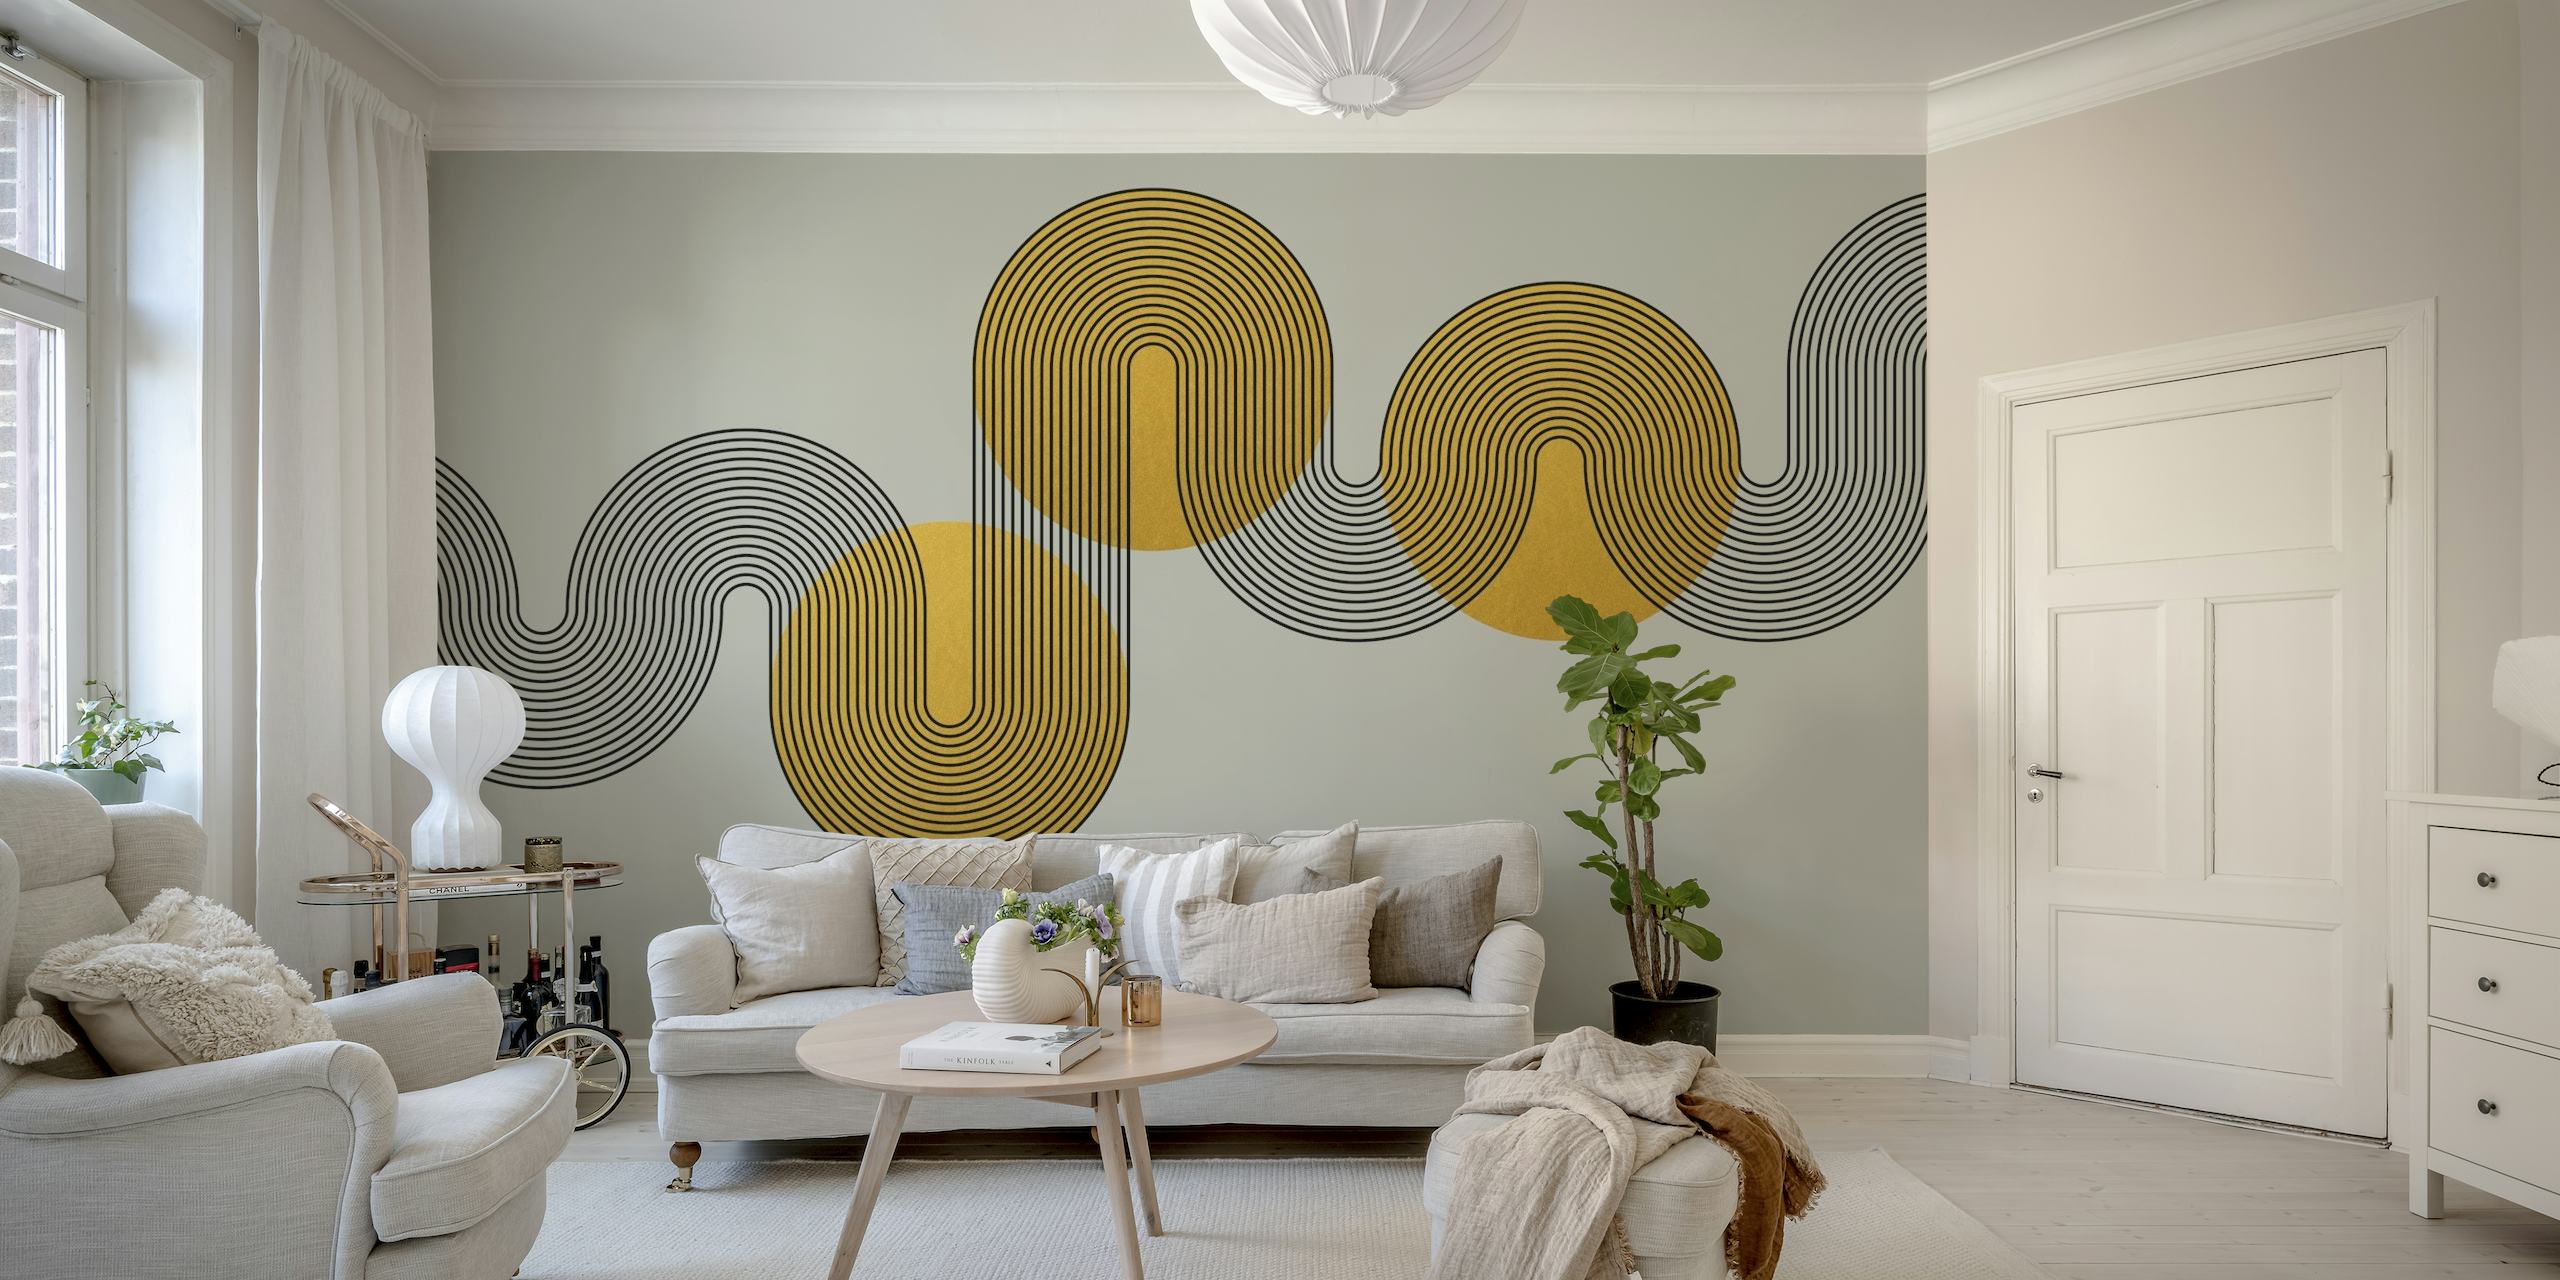 Zidna slika u stilu apstraktne Art Deco s geometrijskim oblicima u zlatnim i sivim tonovima